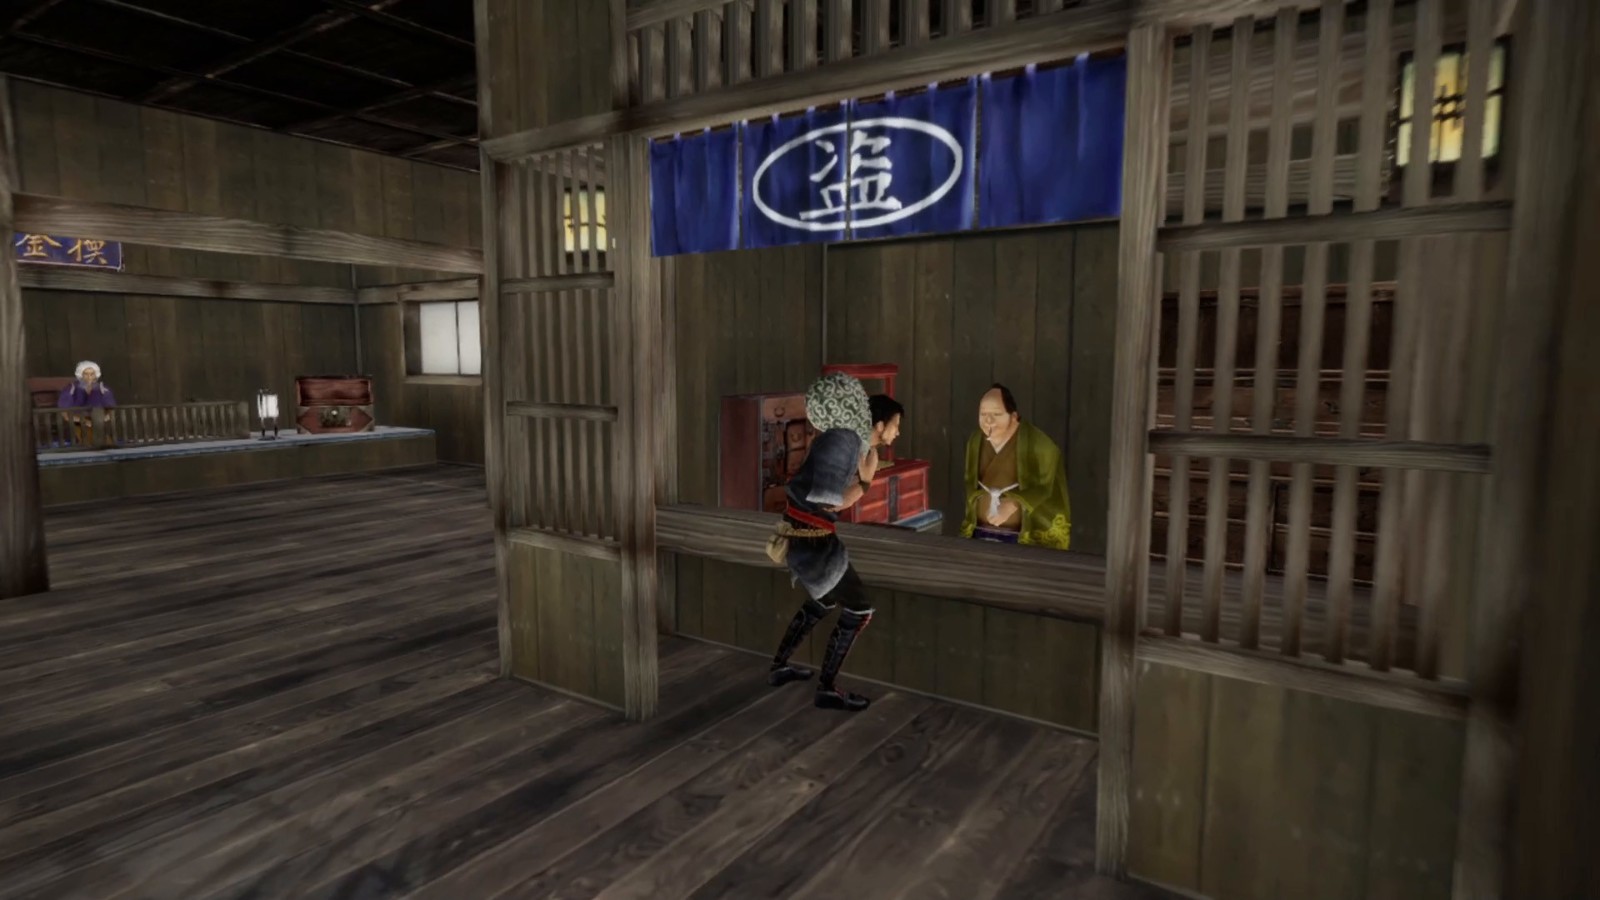 潜行动作游戏《神技：盗来》现已在Steam发售 支持繁体中文 二次世界 第9张